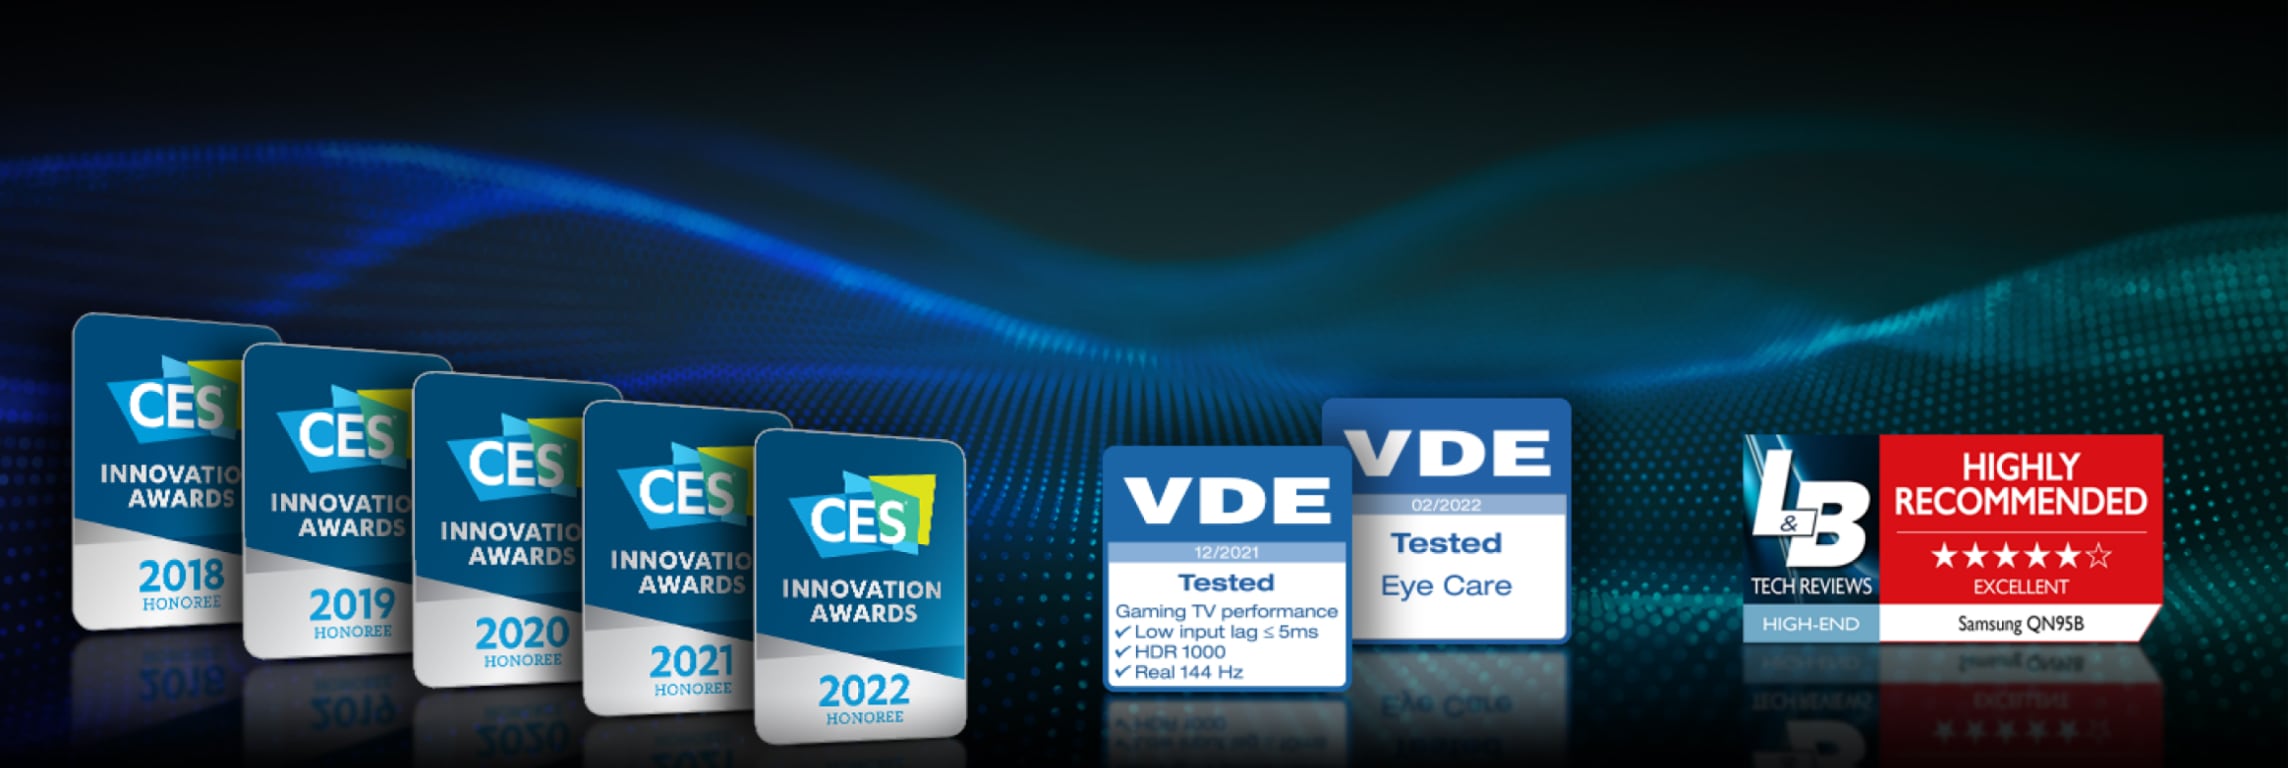 Samsung Gaming TV Awards rinnalla CES Innovation Awards 2022, VDE-testattu ja L&B-suositus